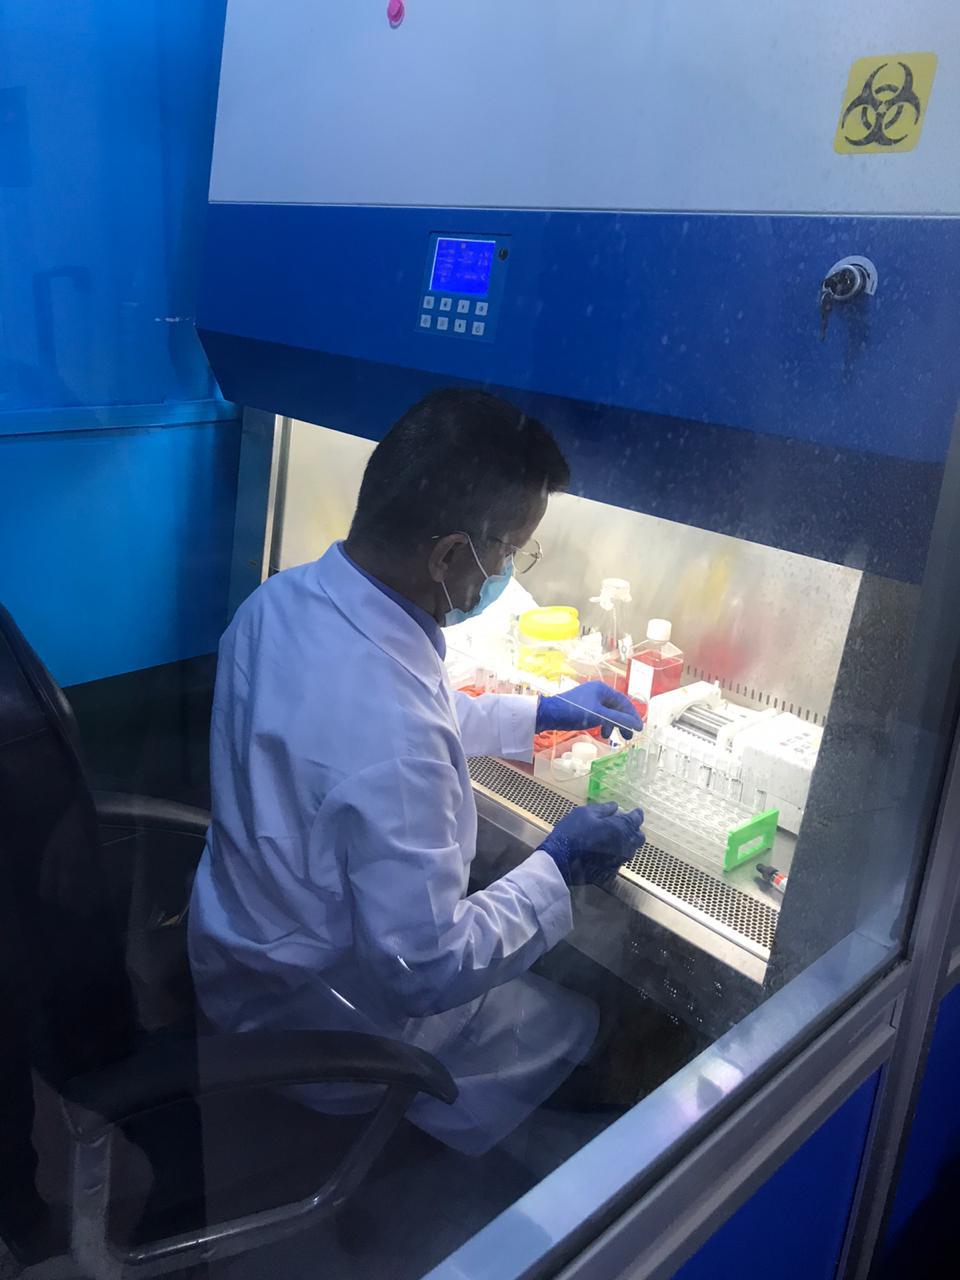 جامعة البصرة تستمر بإنتاج الاوساط الناقلة للفايروسات لمختبر الصحة لفحص فايروس كورونا 